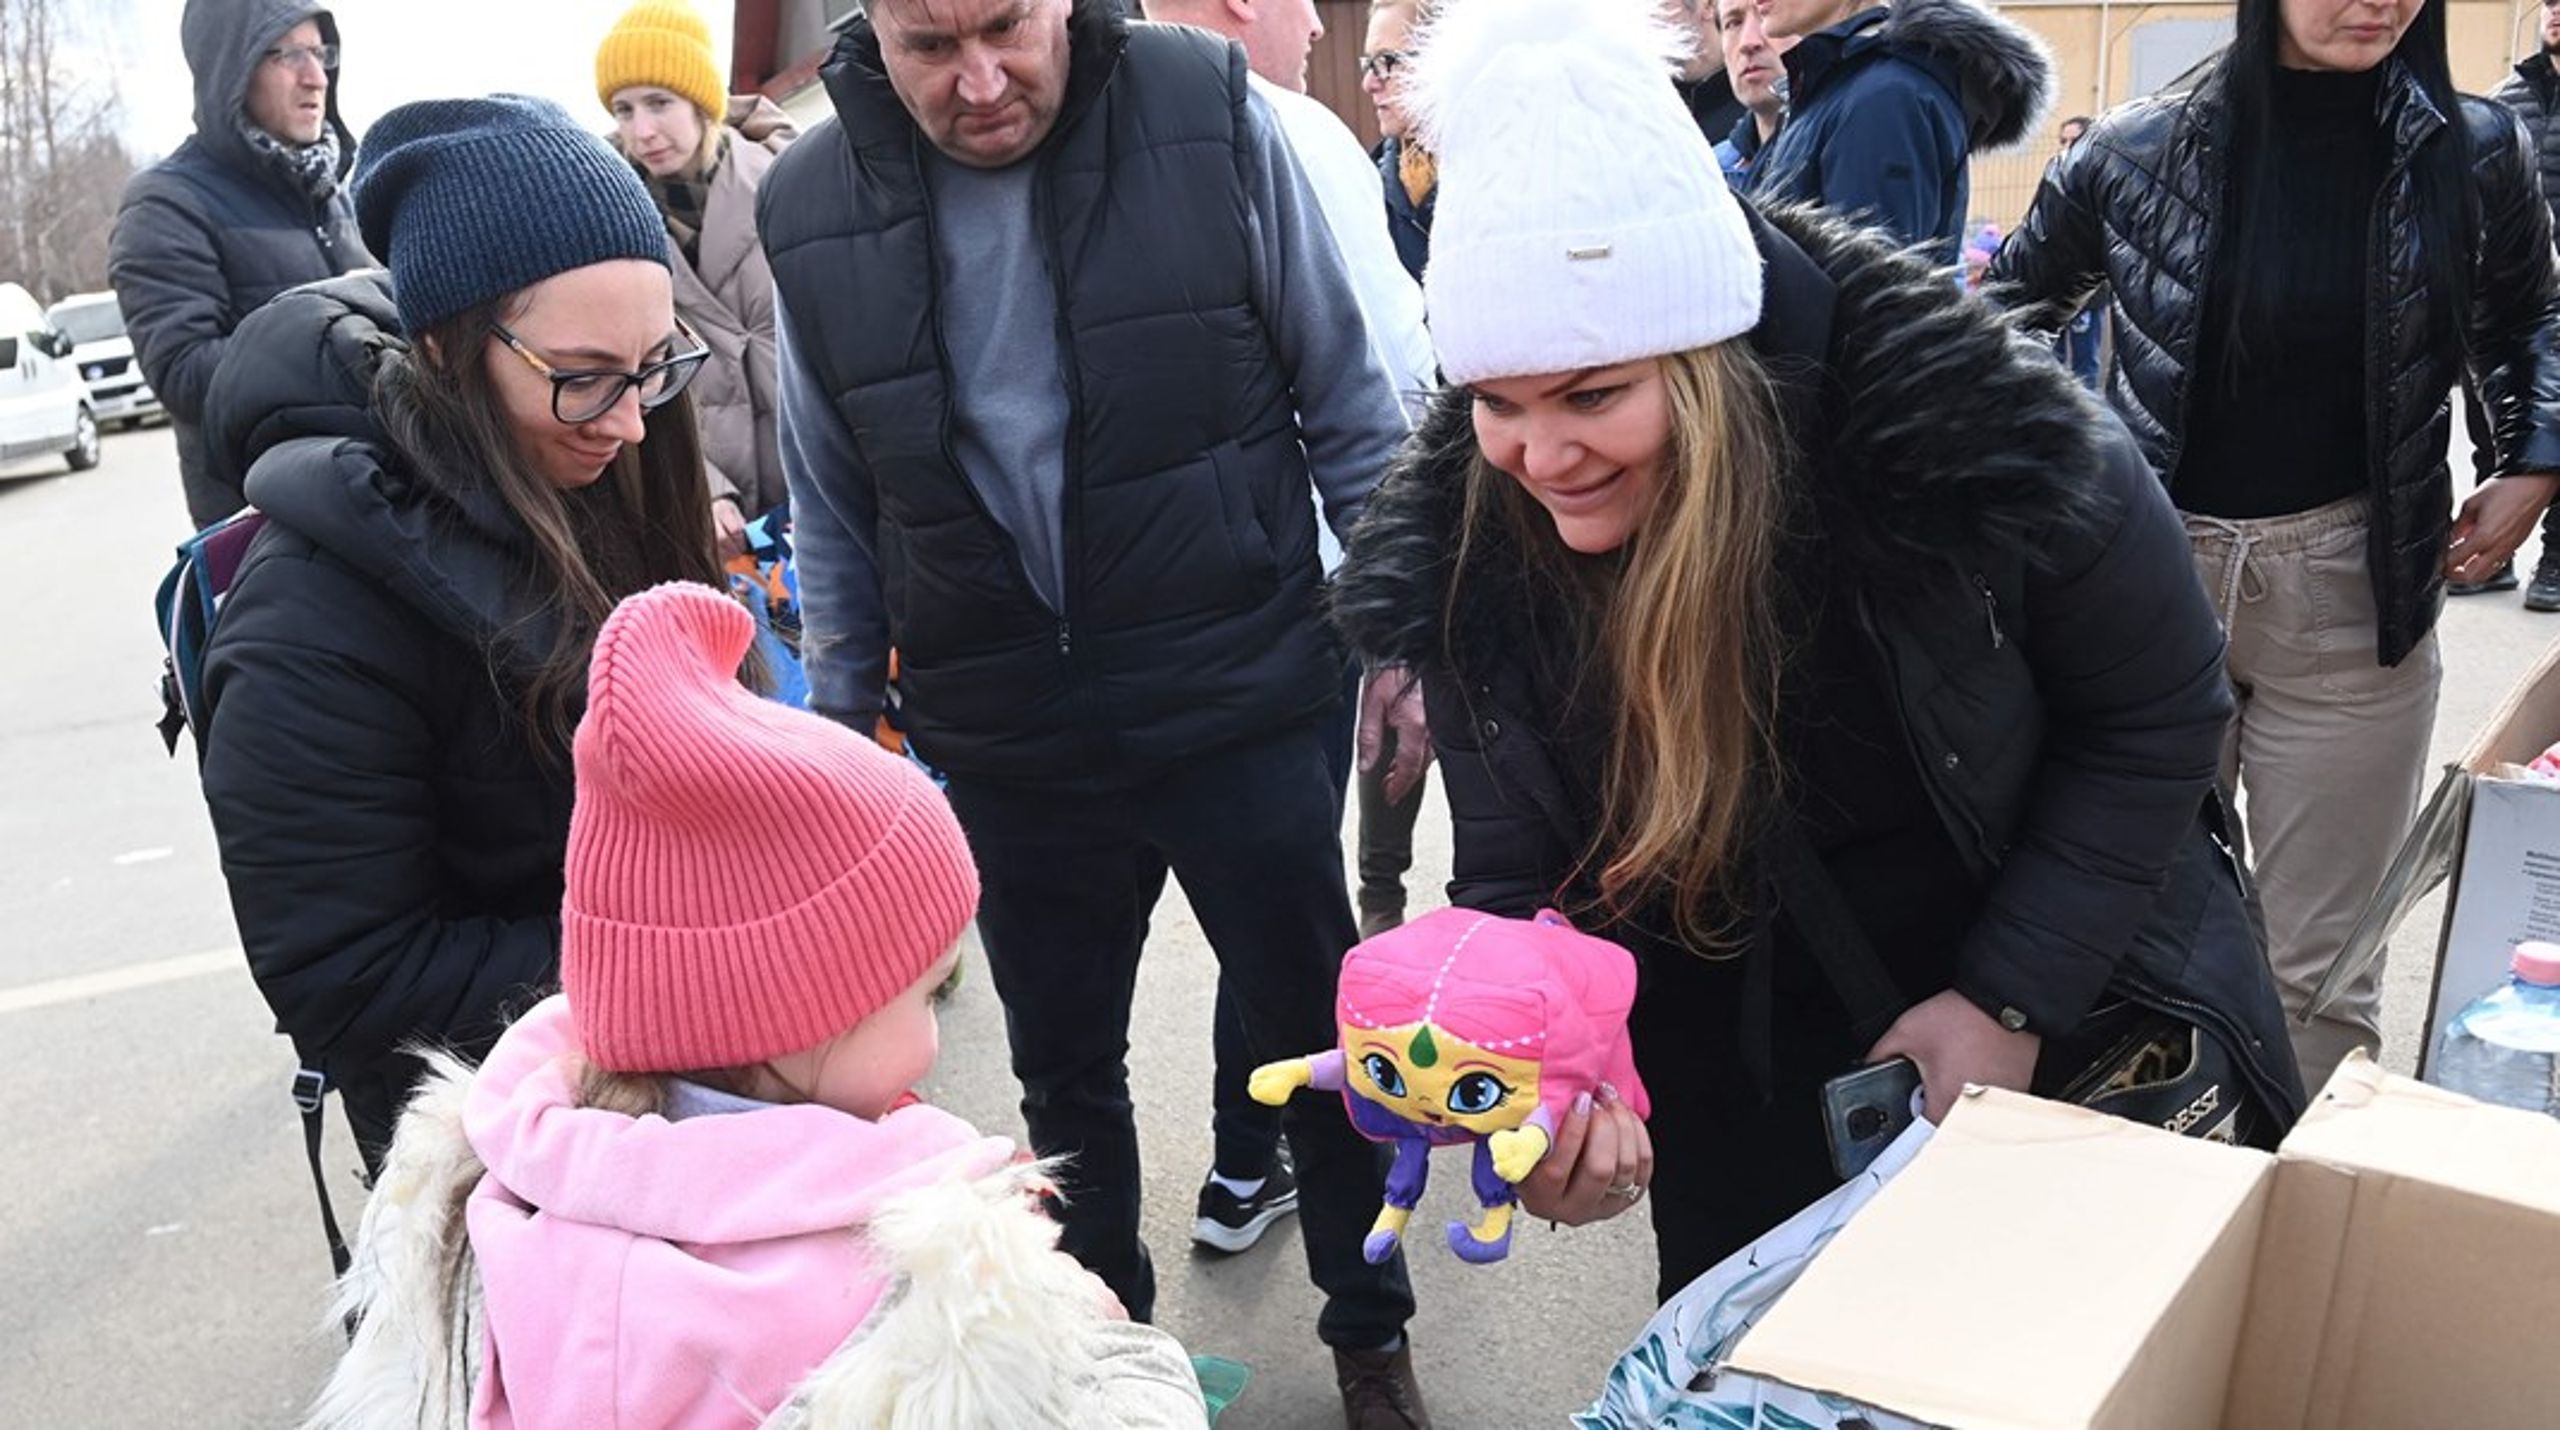 Danmark afsætter 25 millioner kroner til UNICEF’s respons, som skal hjælpe op mod 7,5 millioner børn i Ukraine og sikre deres uddannelse, sundhed og adgang til vand.